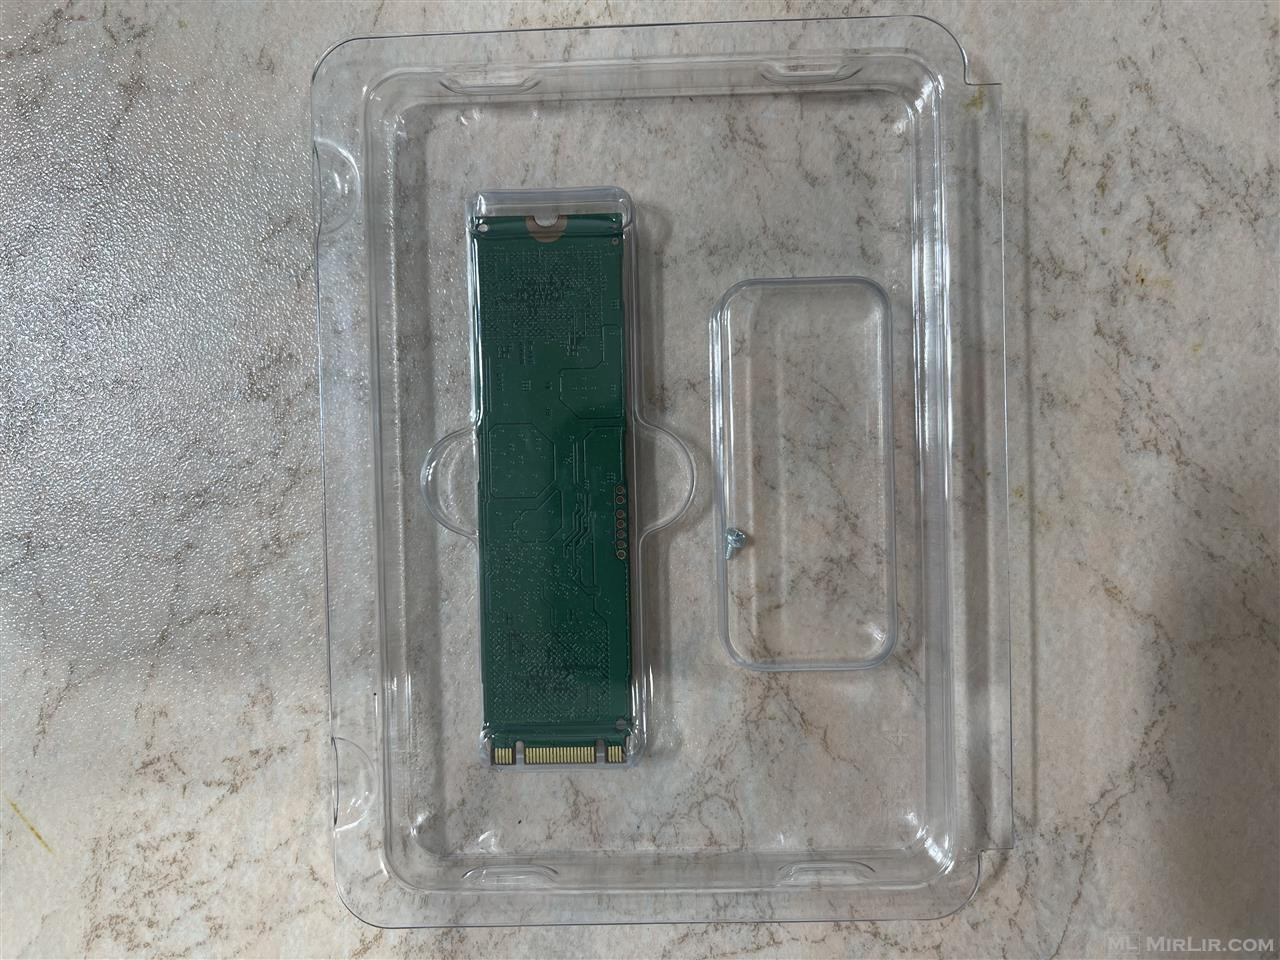 Shitet SSD NVME M2  500GB - 25 mij lek  